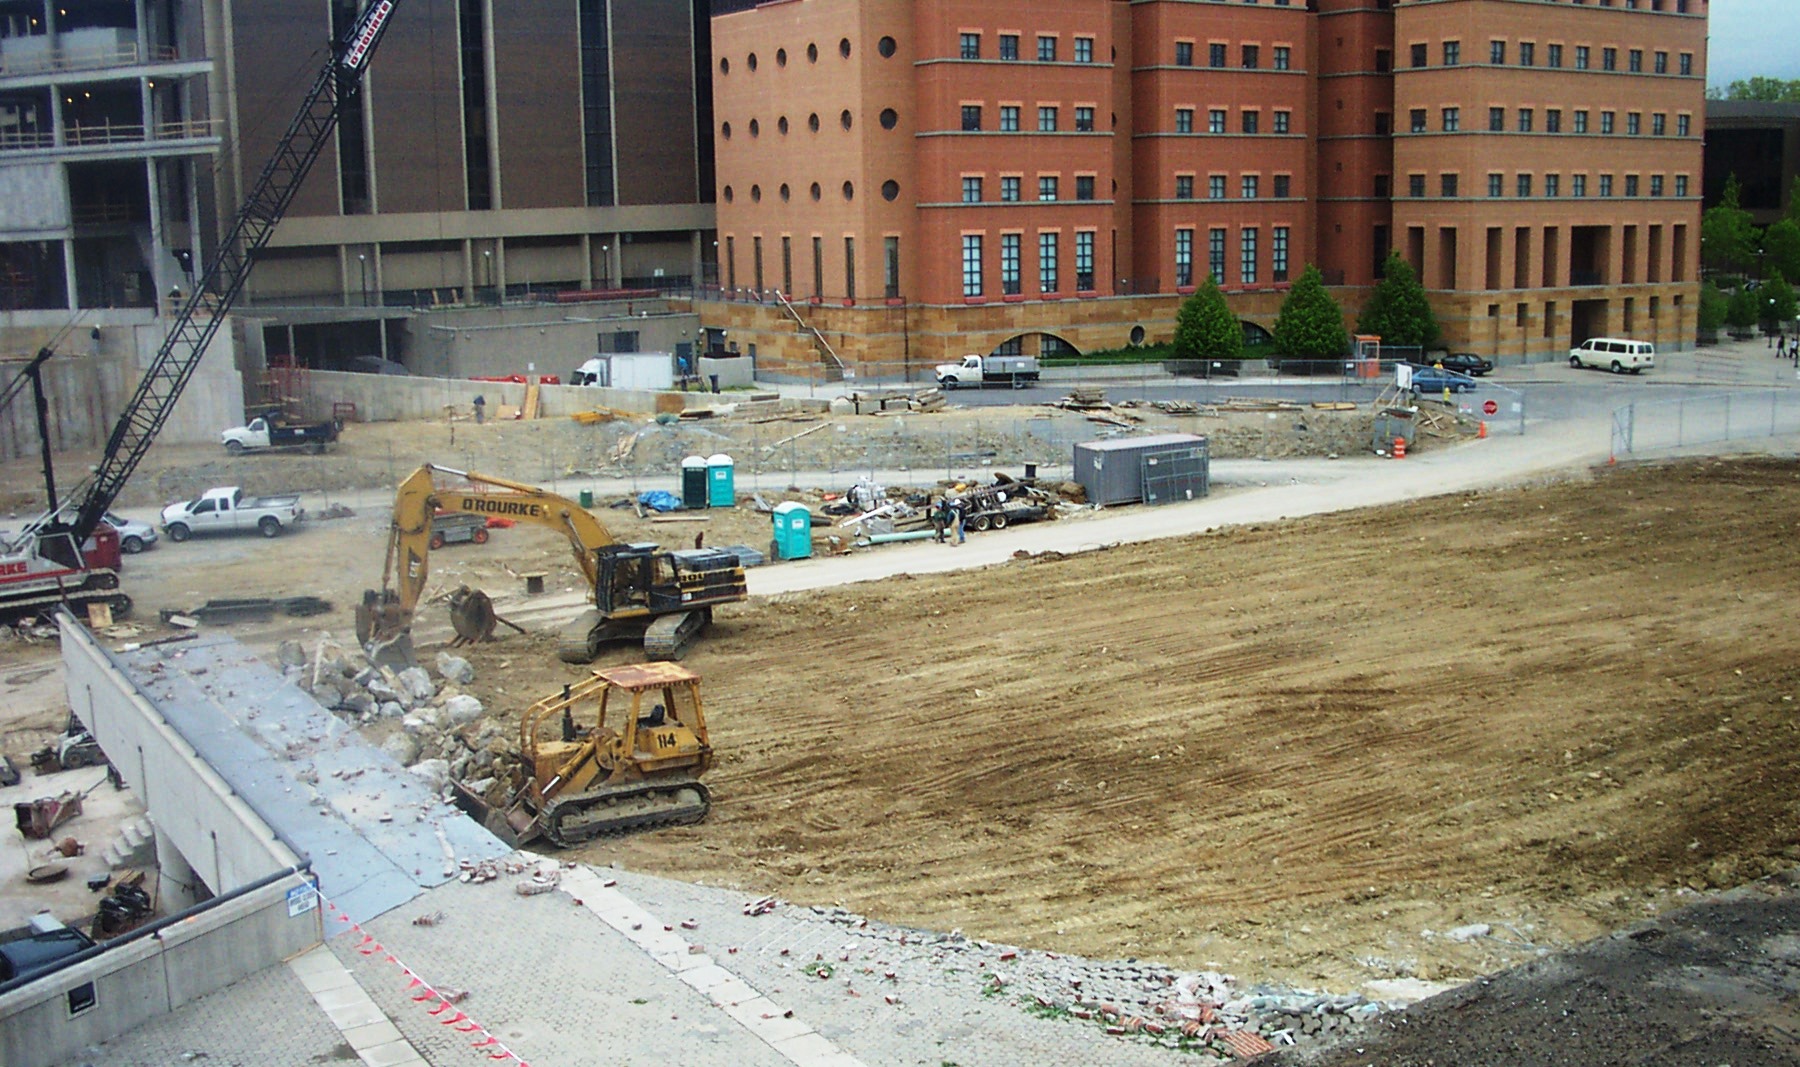 University of Cincinnati Varsity Village Demolition